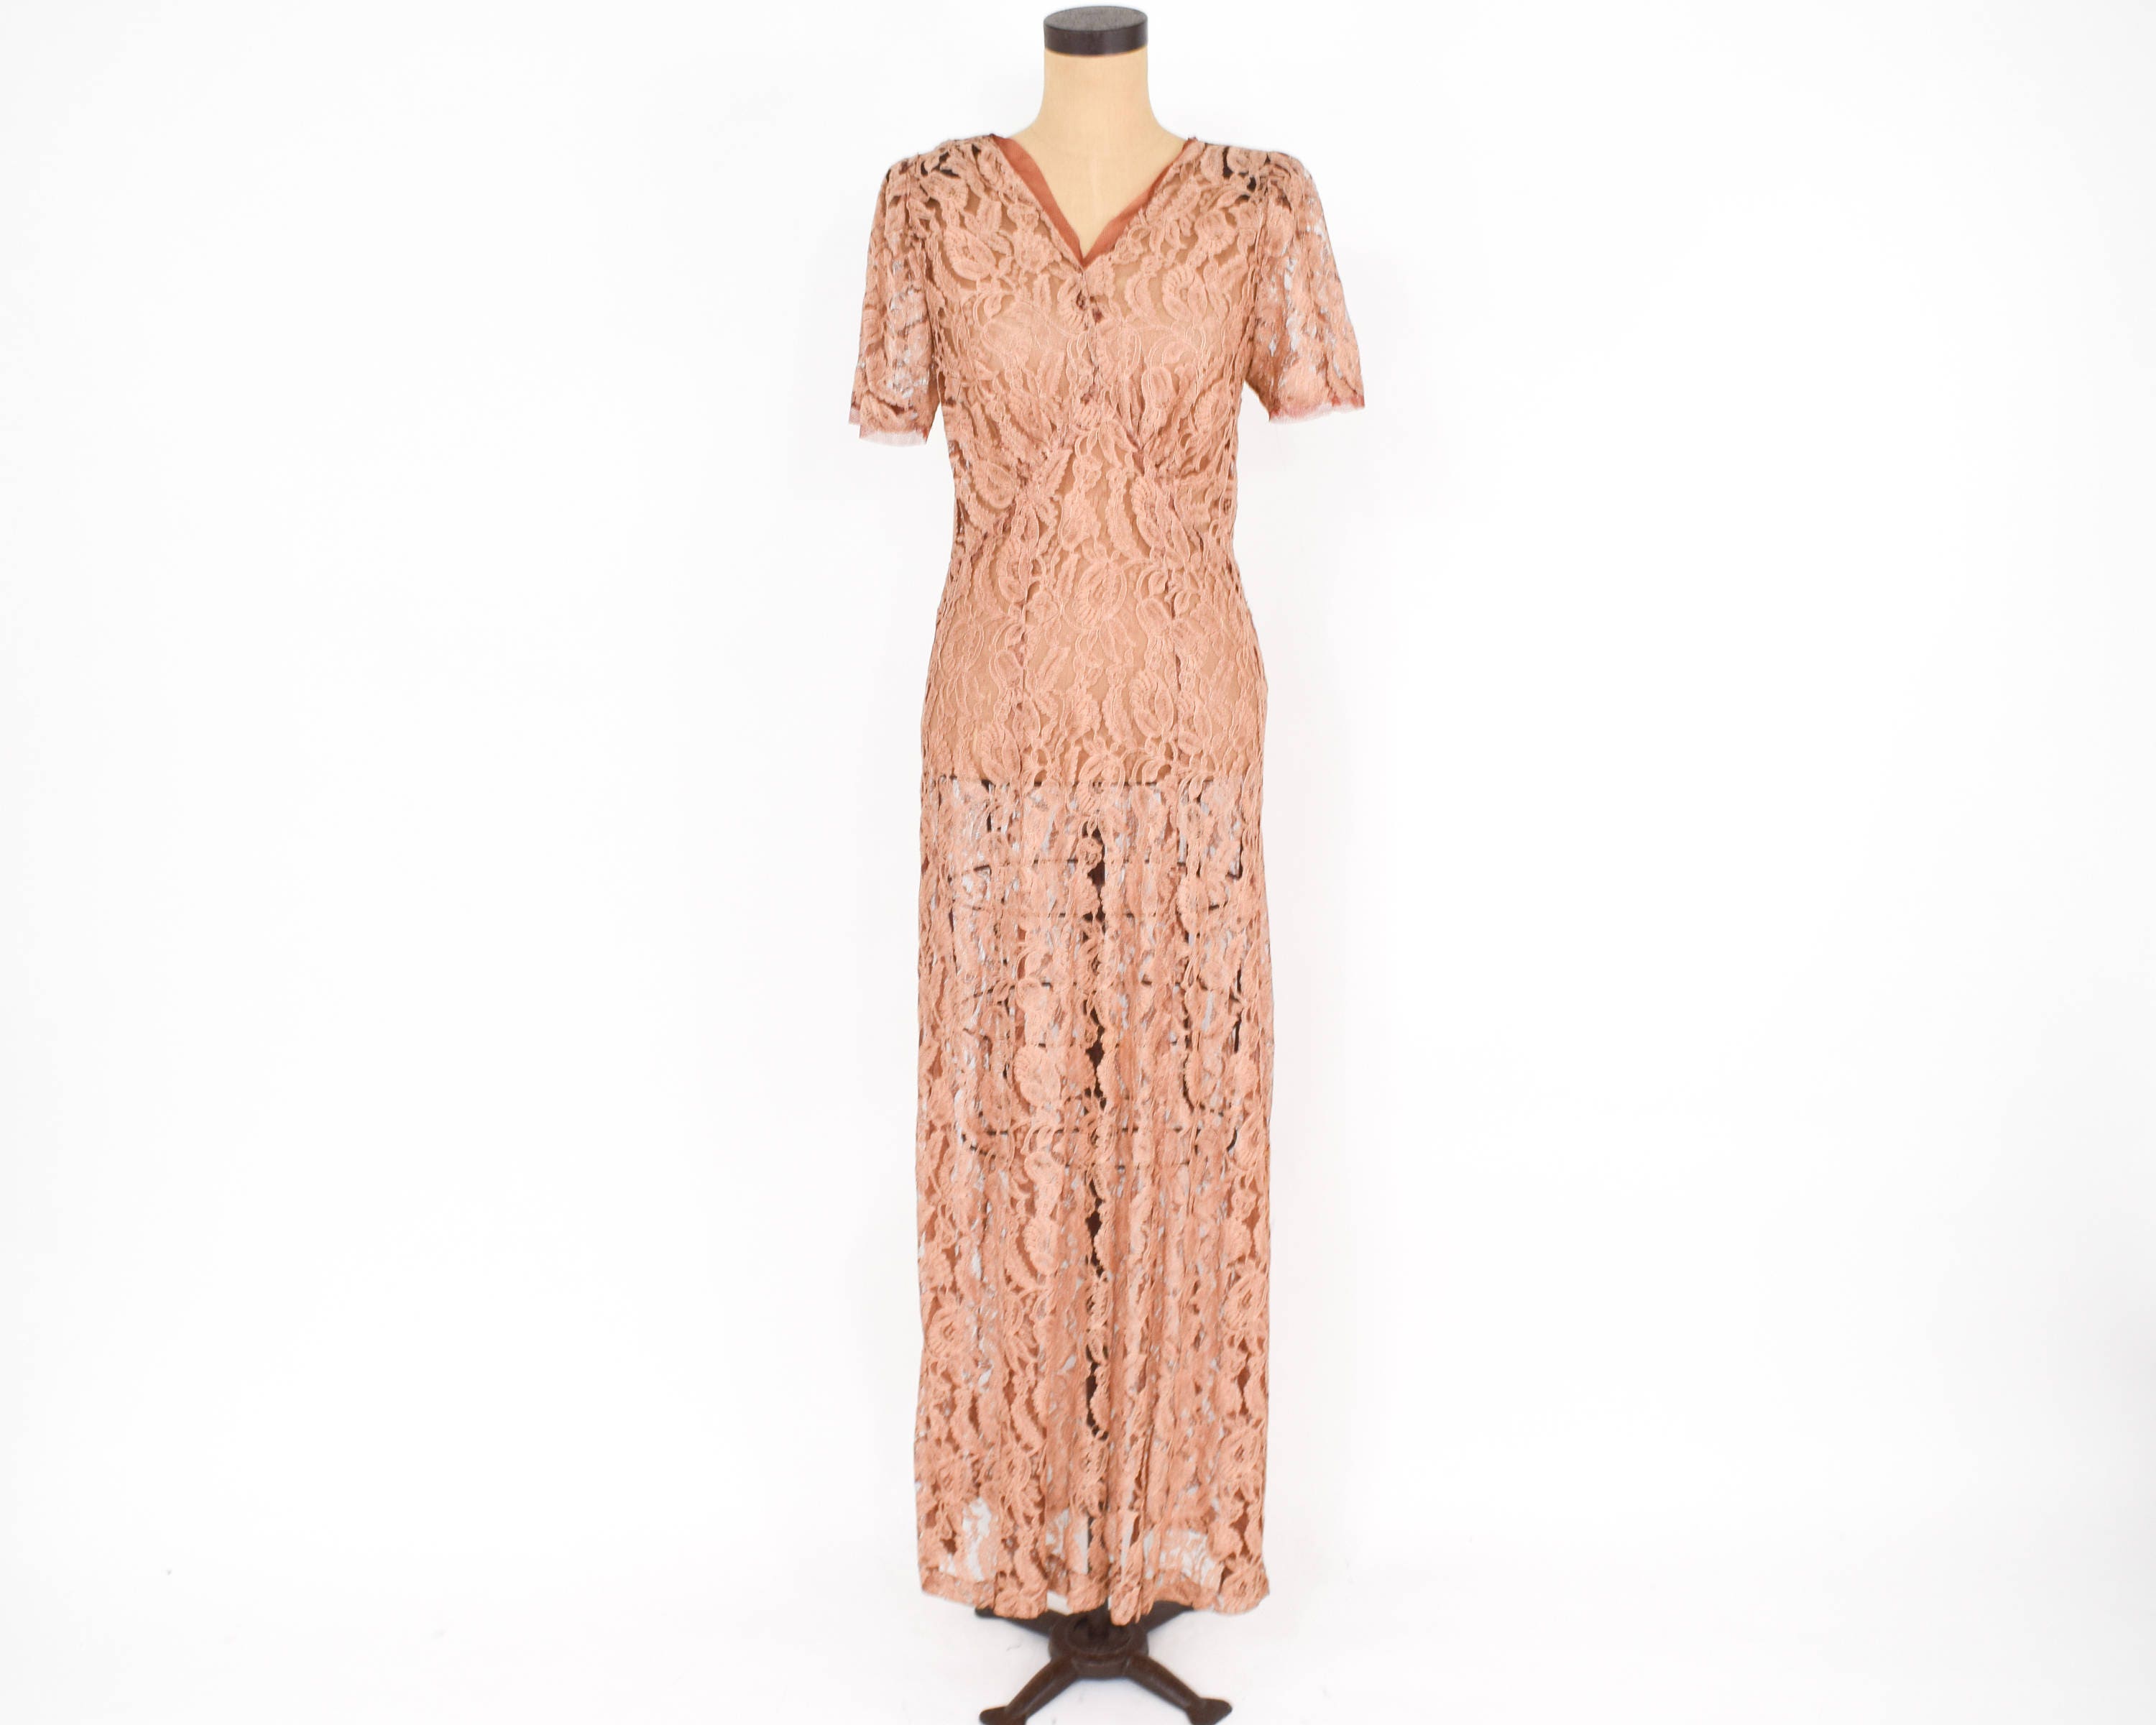 1930s Peach Lace Dress 30s Copper Floral Lace Evening Dress - Etsy